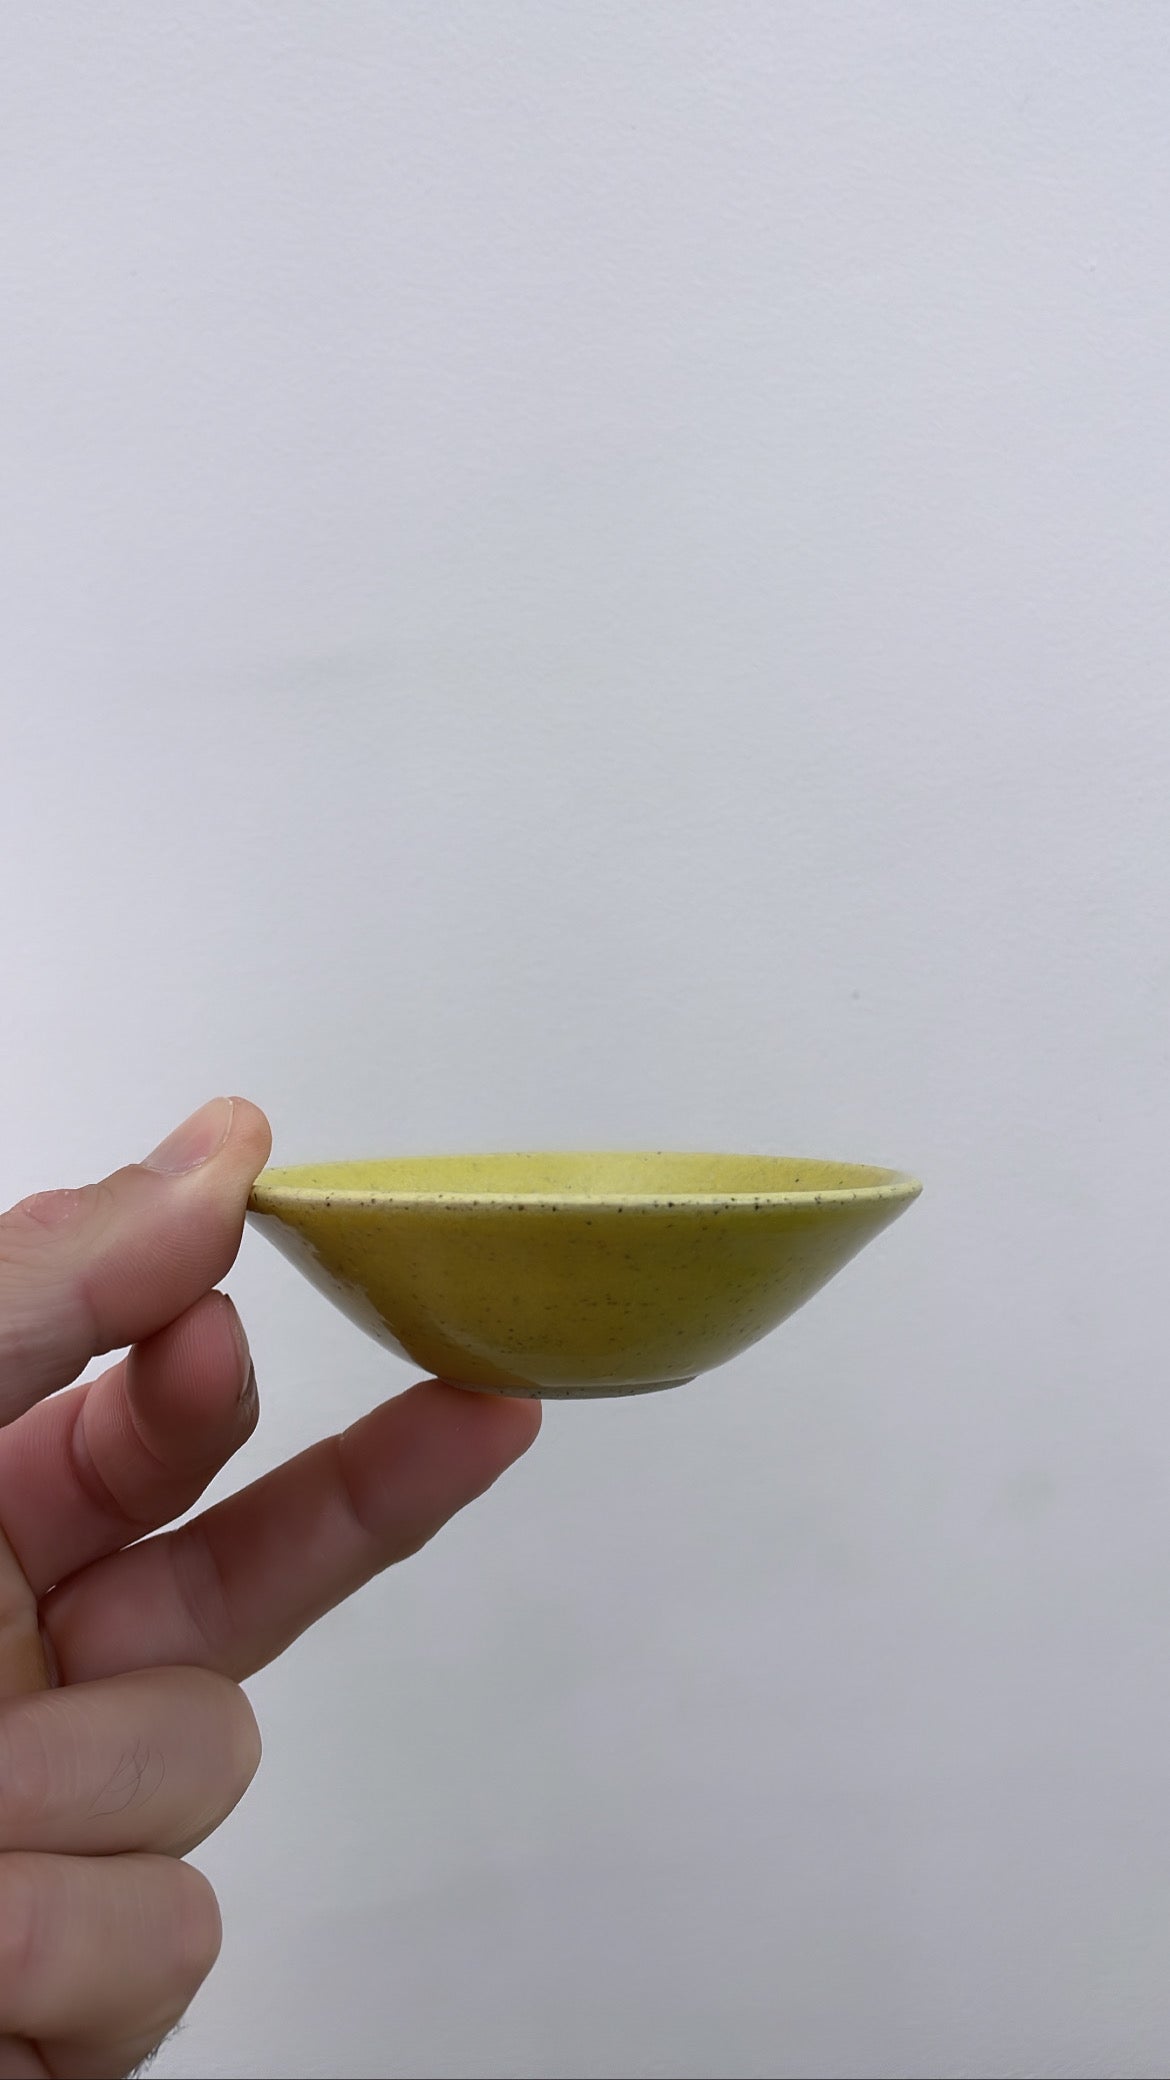 Avocado propagation tray